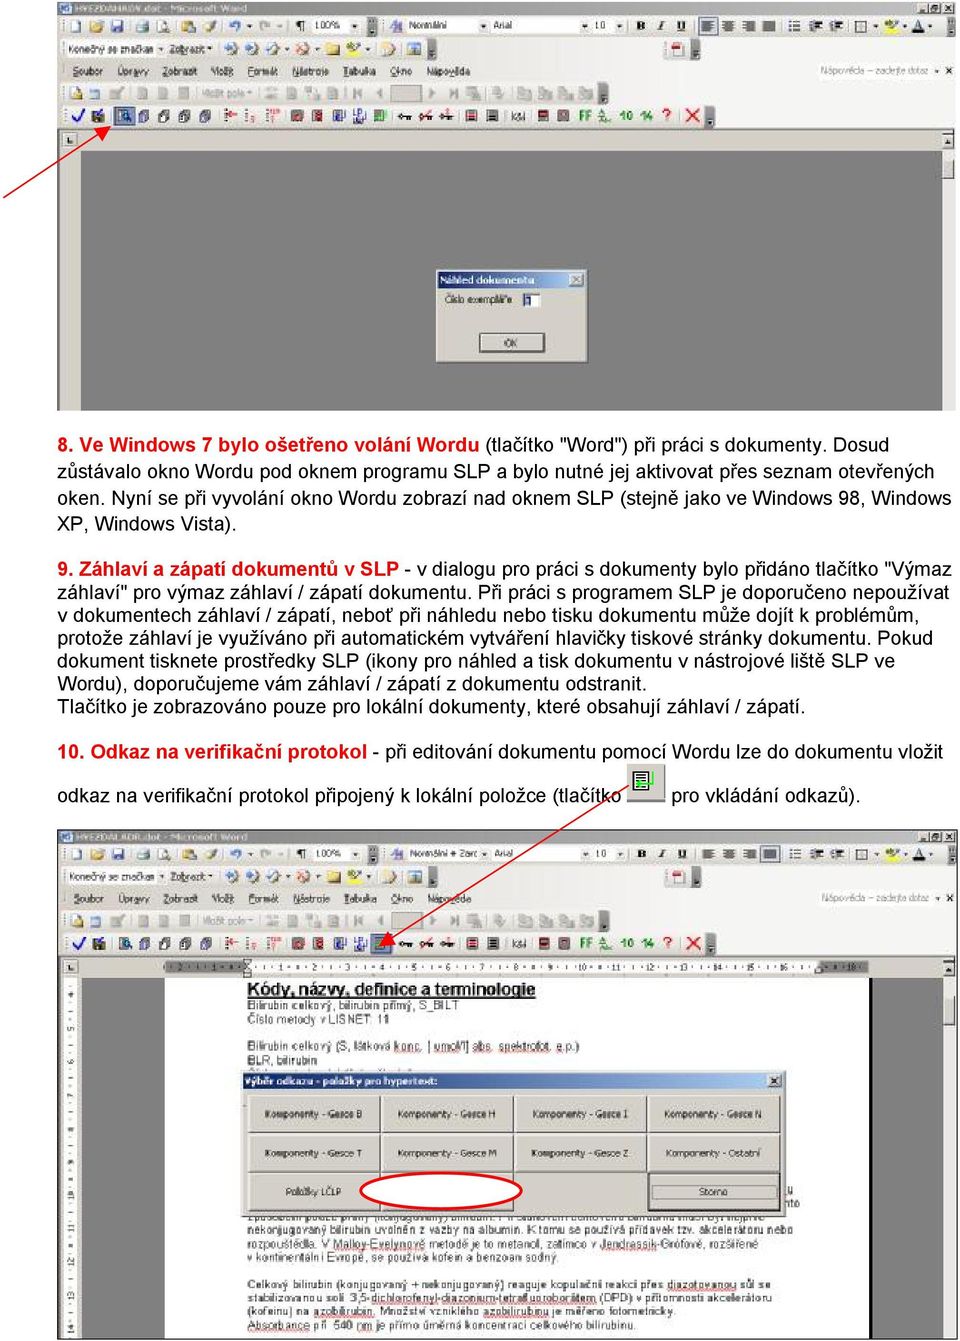 , Windows XP, Windows Vista). 9. Záhlaví a zápatí dokumentů v SLP - v dialogu pro práci s dokumenty bylo přidáno tlačítko "Výmaz záhlaví" pro výmaz záhlaví / zápatí dokumentu.